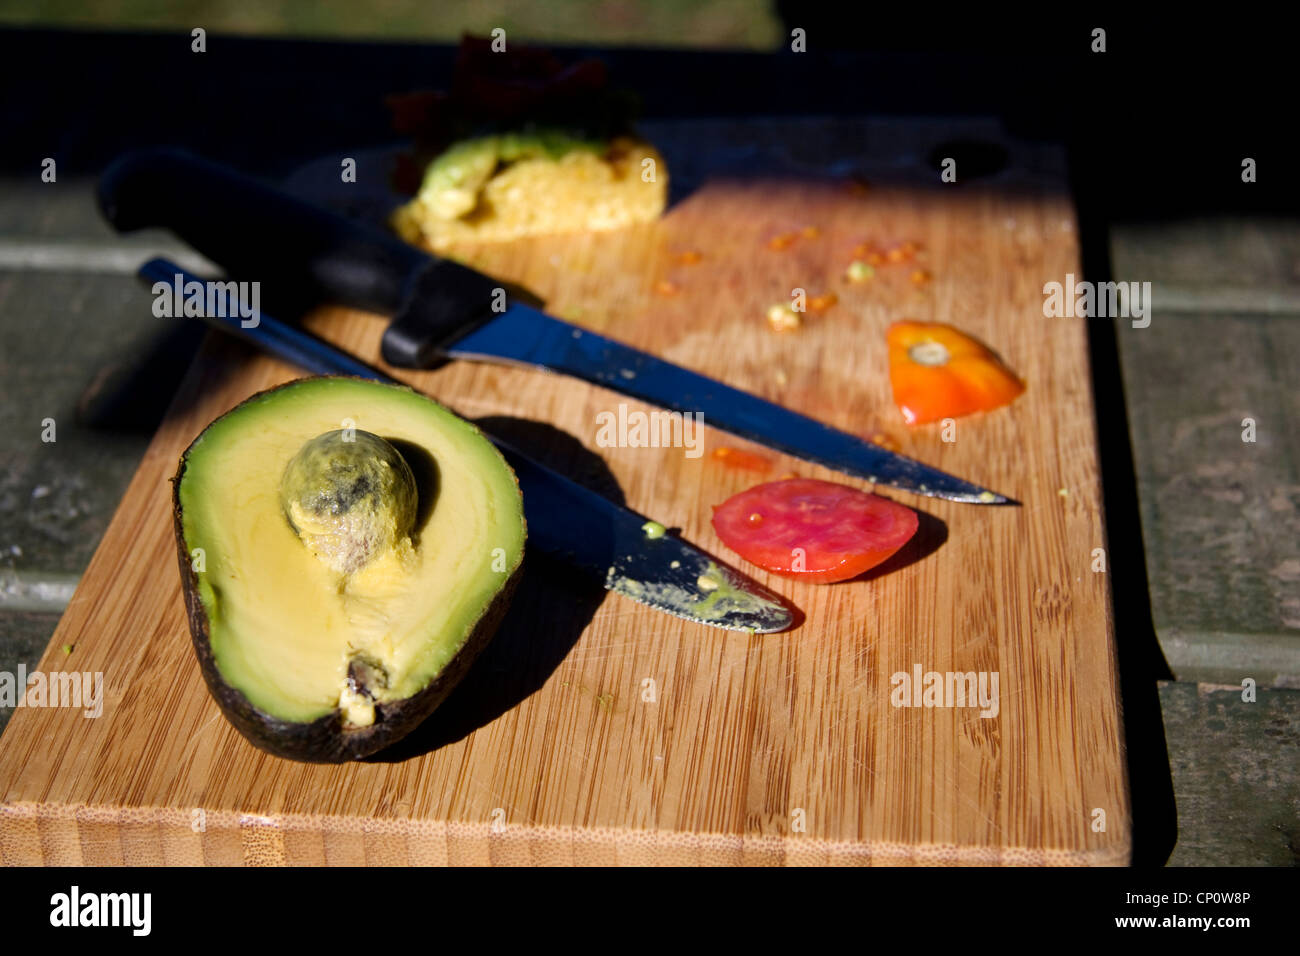 A half-cut Avocado. Stock Photo